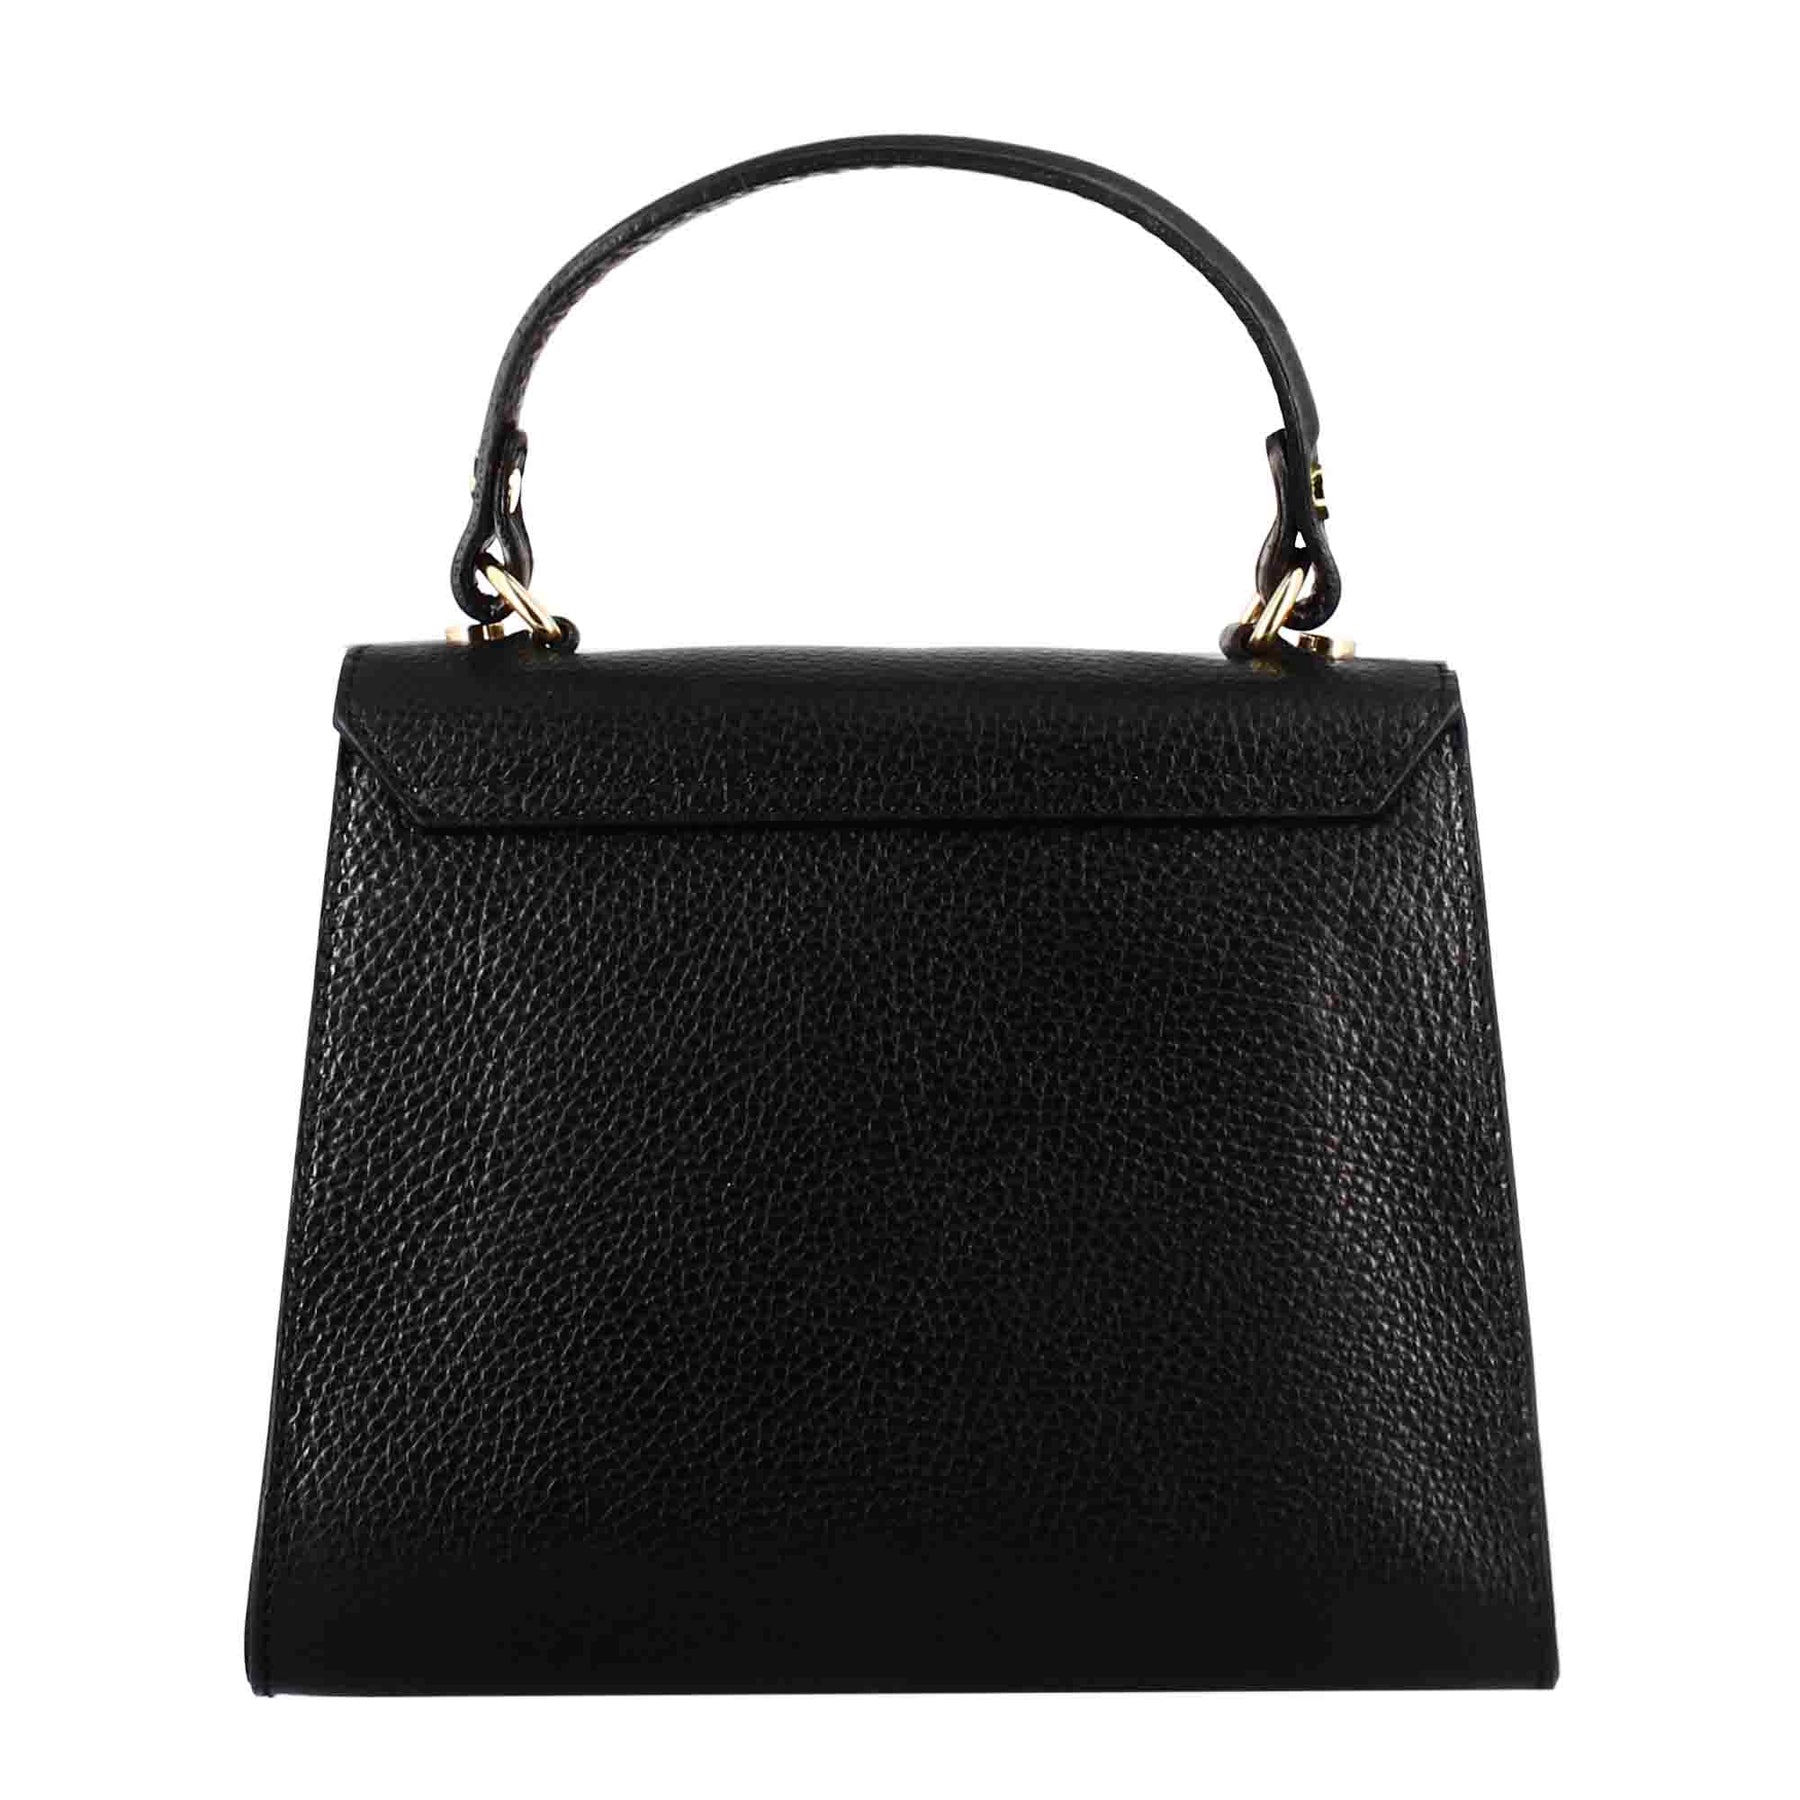 Lady K leather handbag with removable black shoulder strap